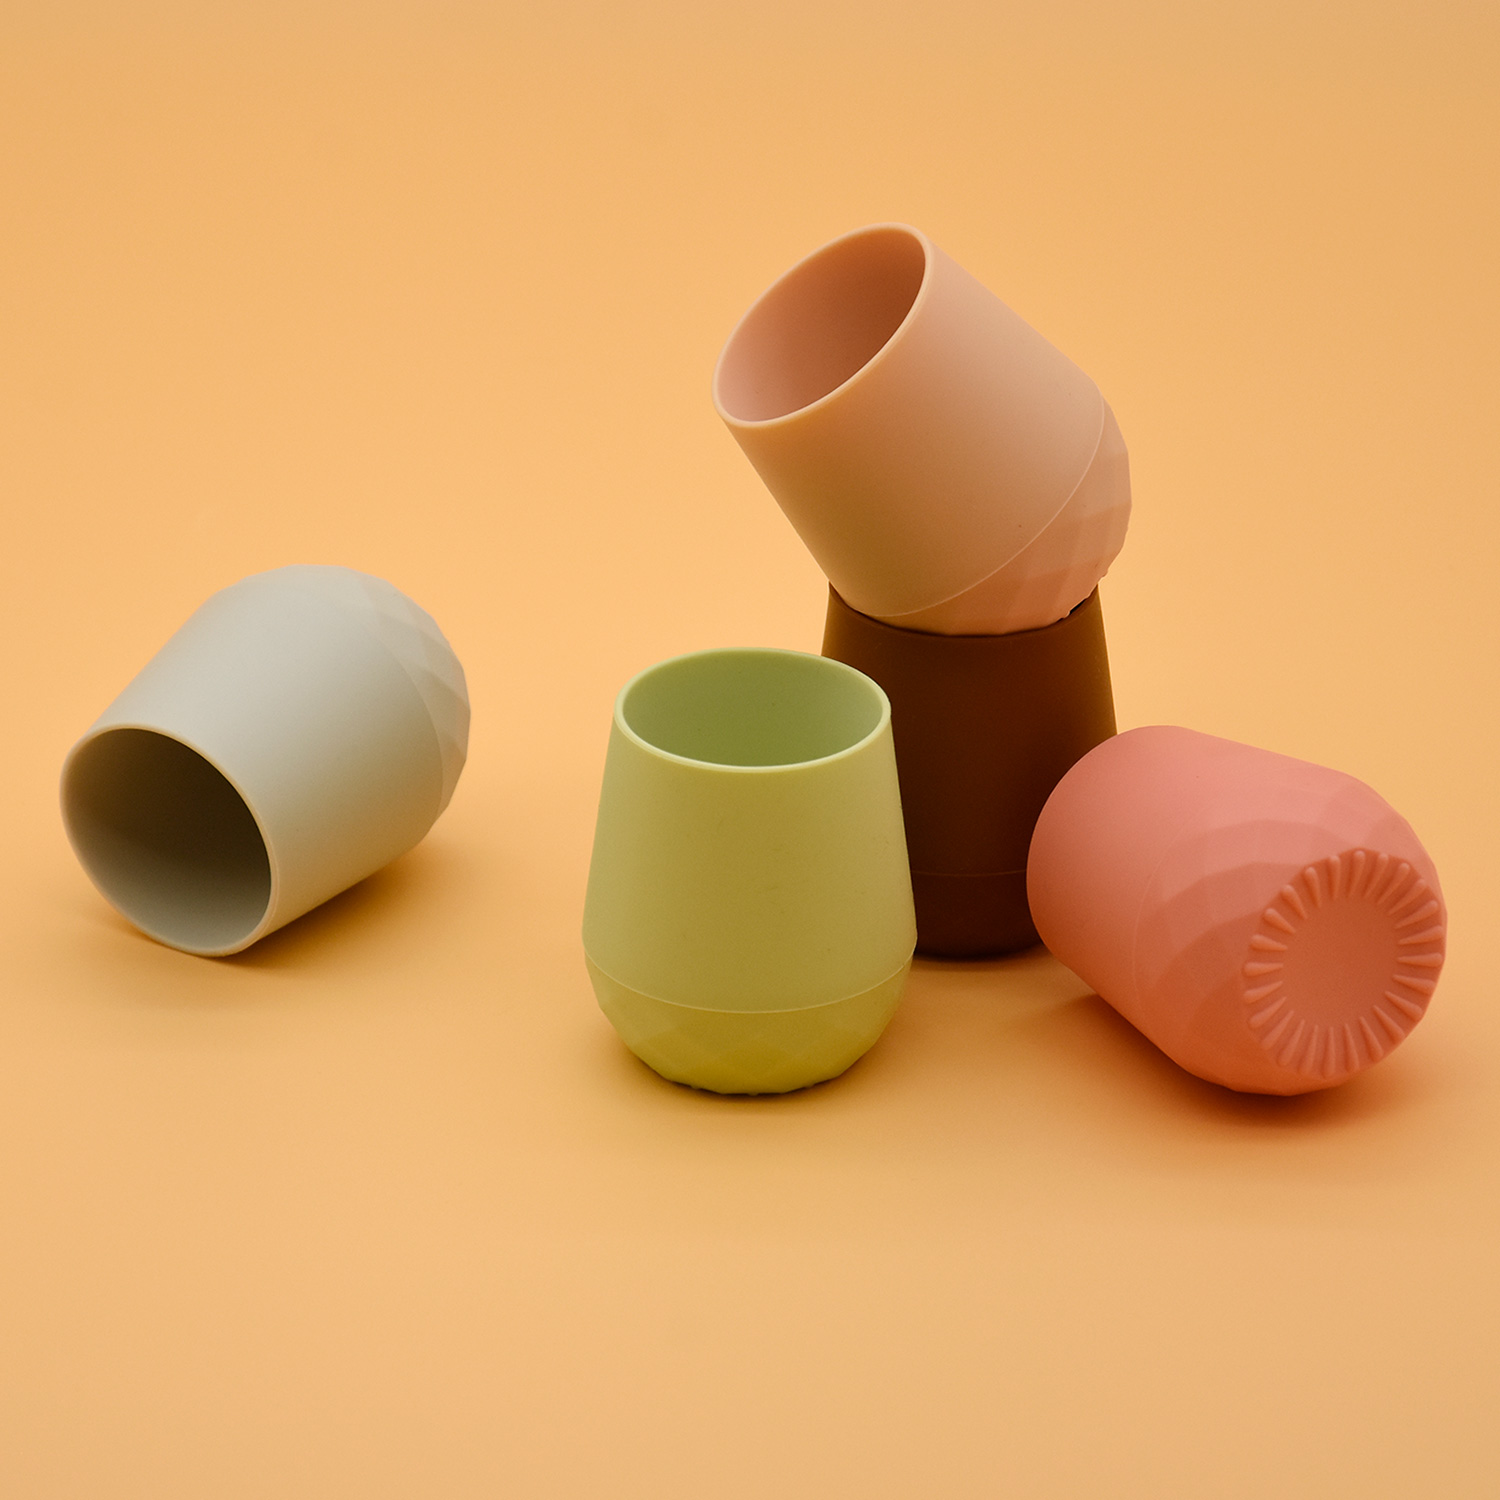 エコフレンドリー幼児シッピーカップ幼児の小さな飲酒トレーニングカップは、抗チョークデザインのシリコーンベビーカップを保持するのが簡単